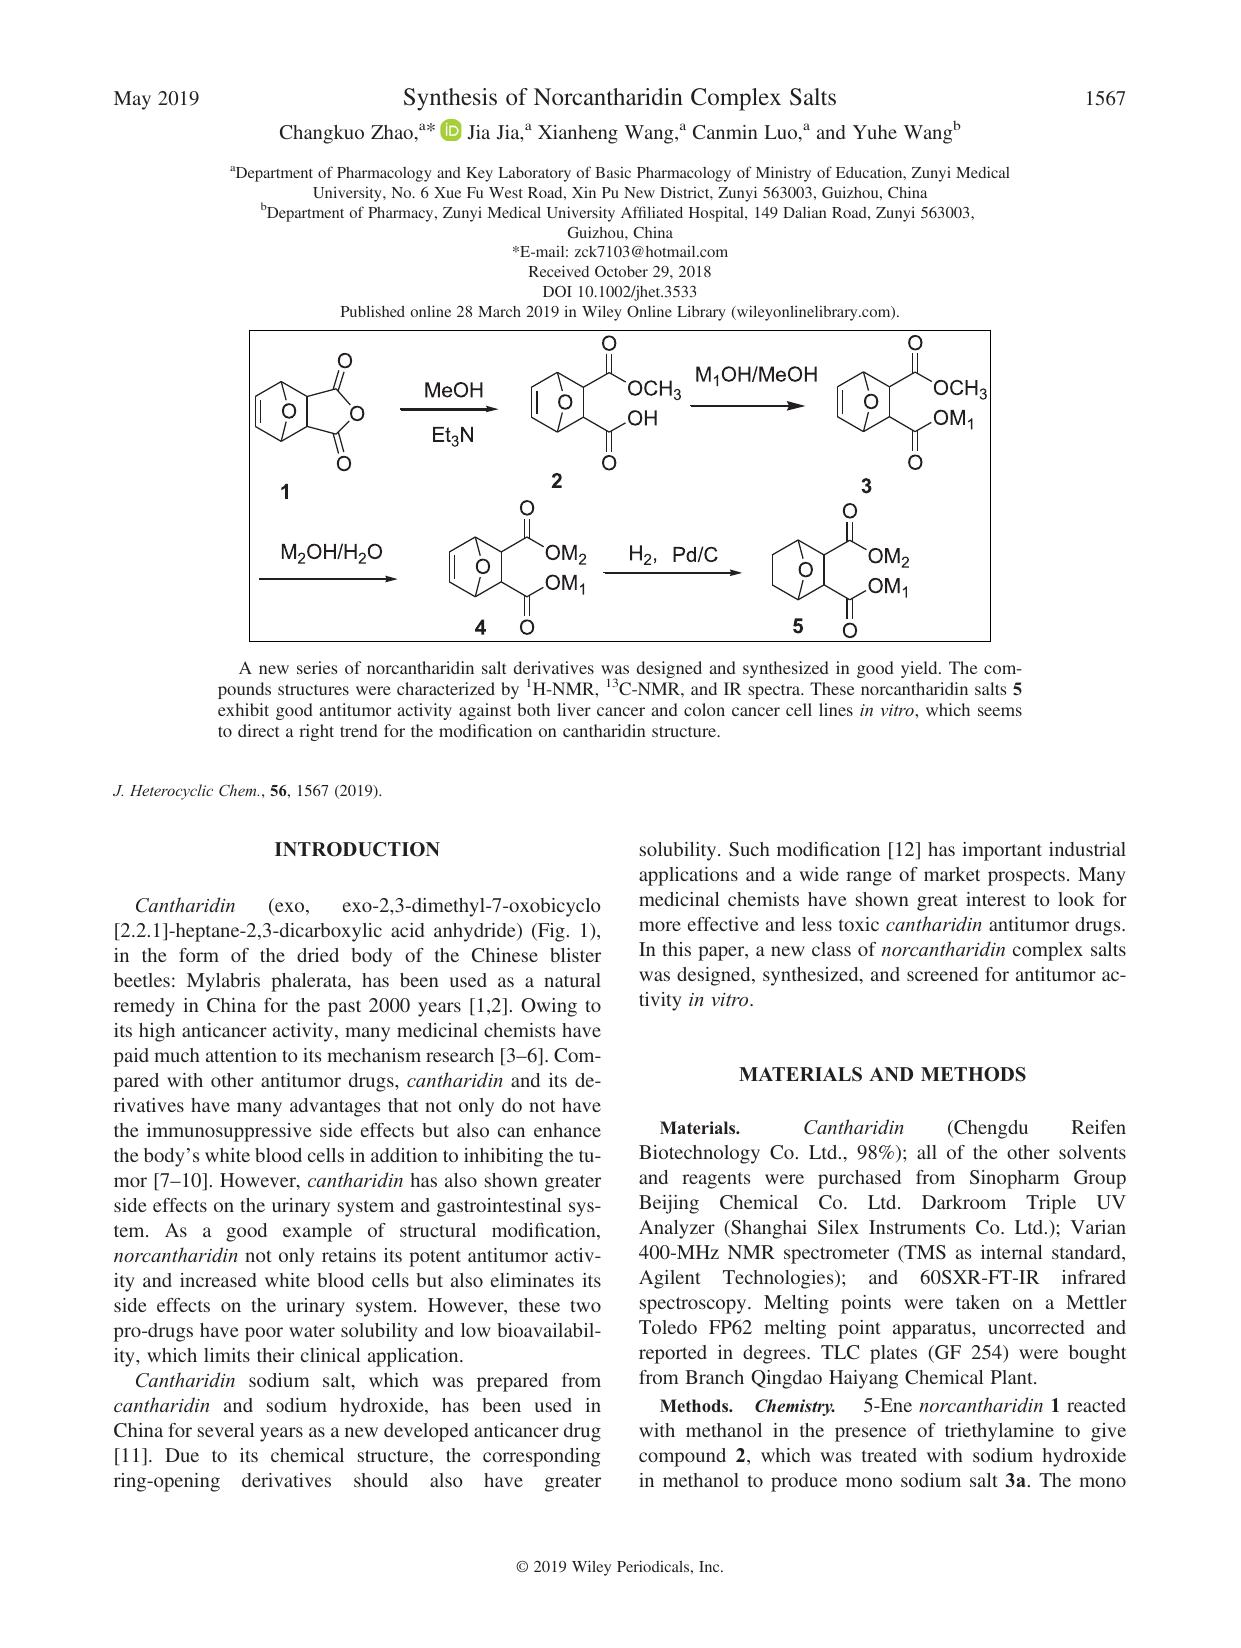 Synthesis of Norcantharidin Complex Salts by Changkuo Zhao Jia Jia Xianheng Wang Canmin Luo Yuhe Wang